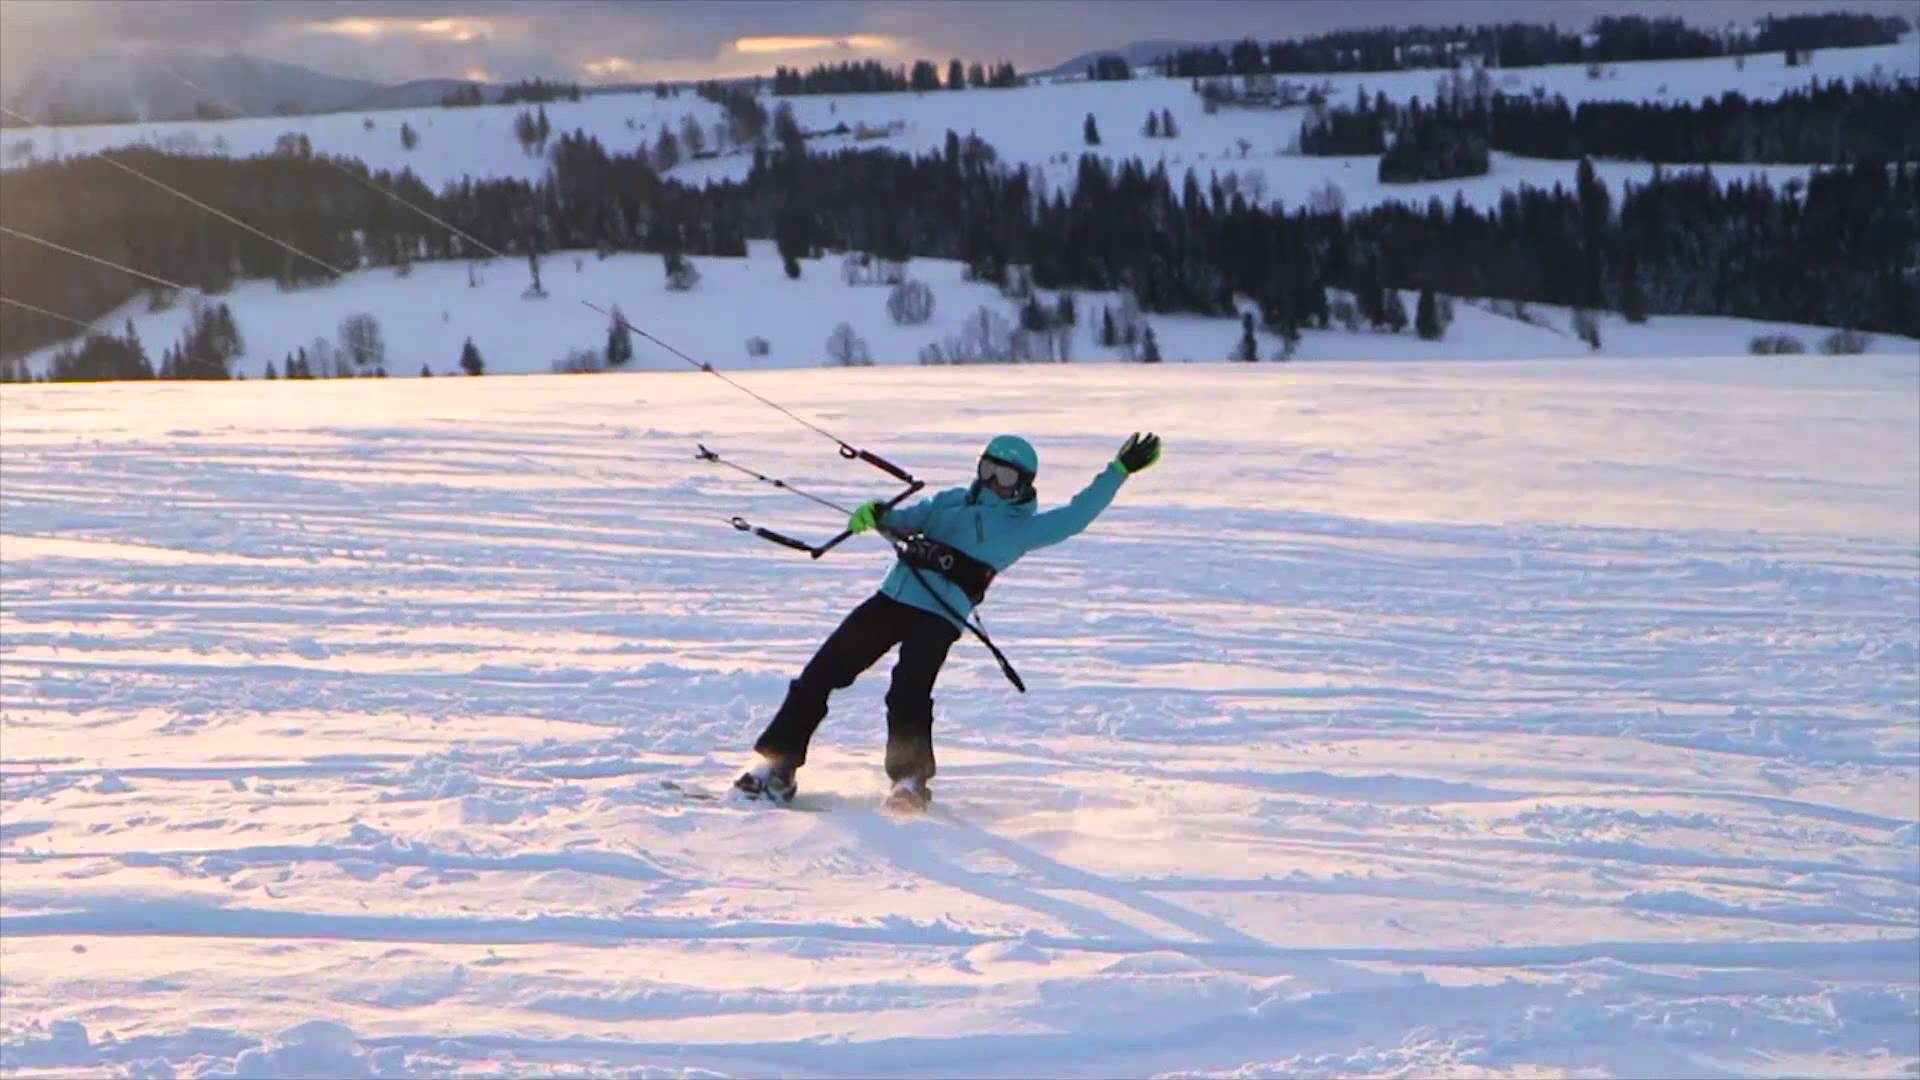 snowkiting with karolina1 - Snowkiting with Karolina